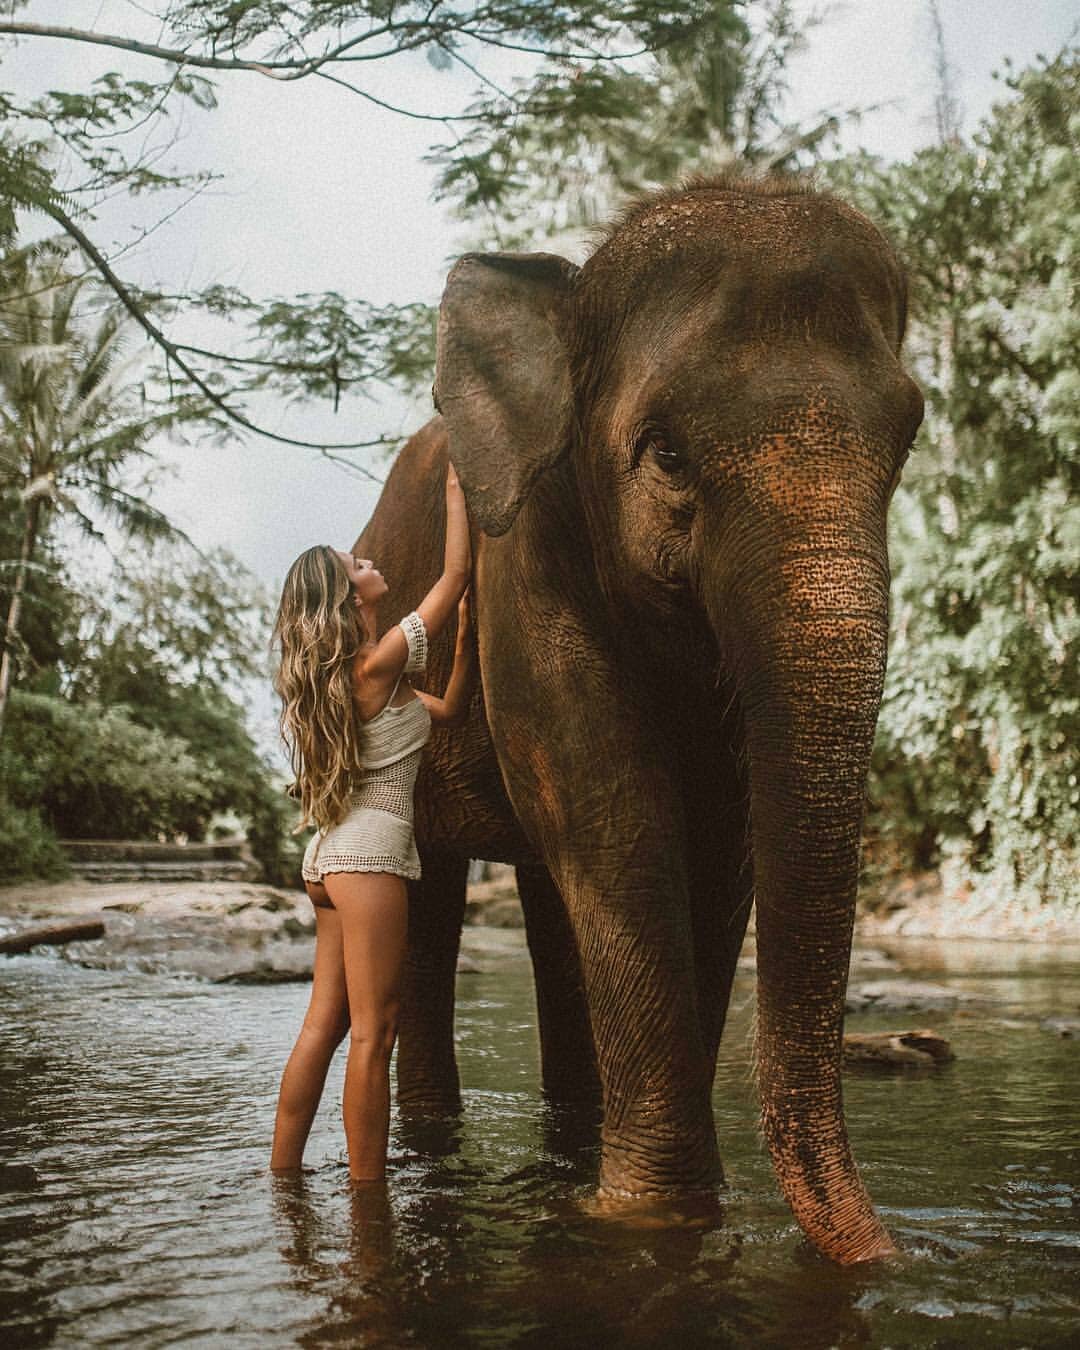 elephant bath in Bali